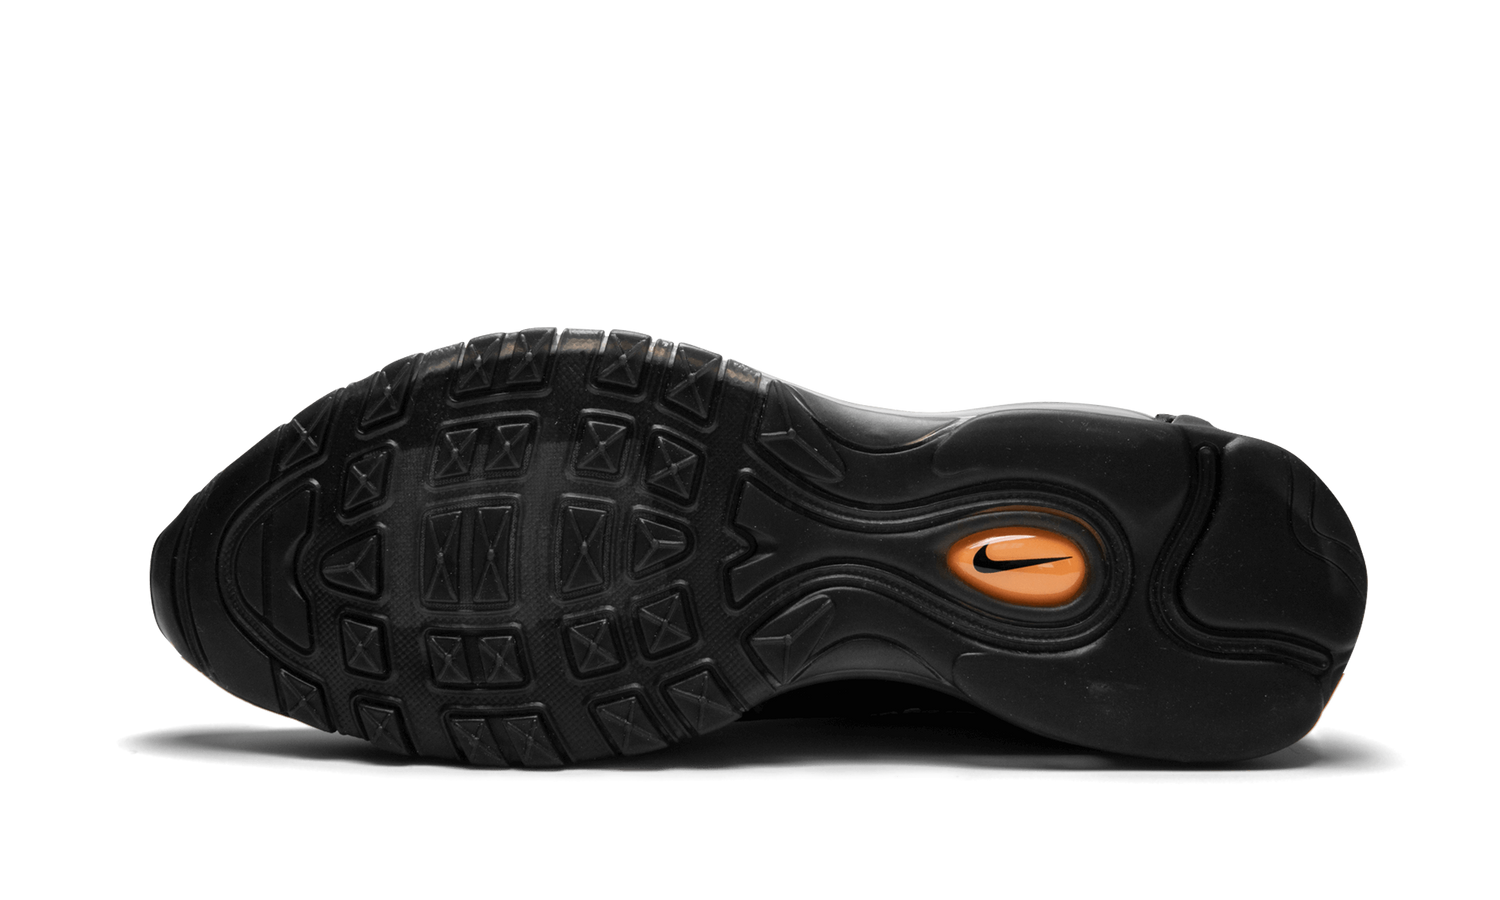 The 10 : Nike Air Max 97 OG “OFF-WHITE” - AJ4585 001 | Grailshop